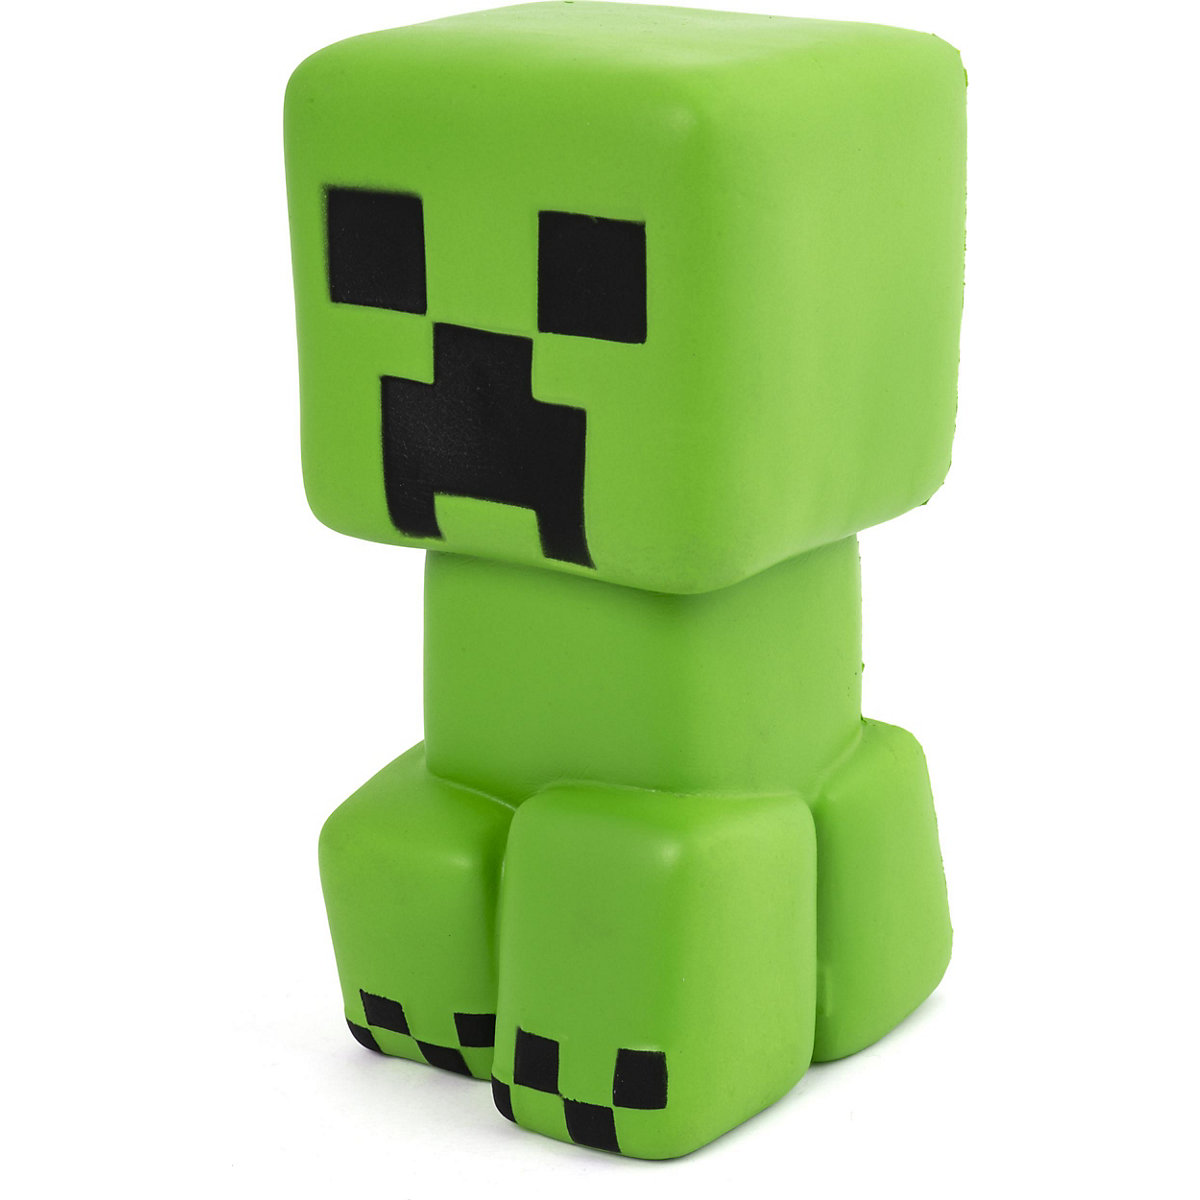 Minecraft Squishme Green Creeper